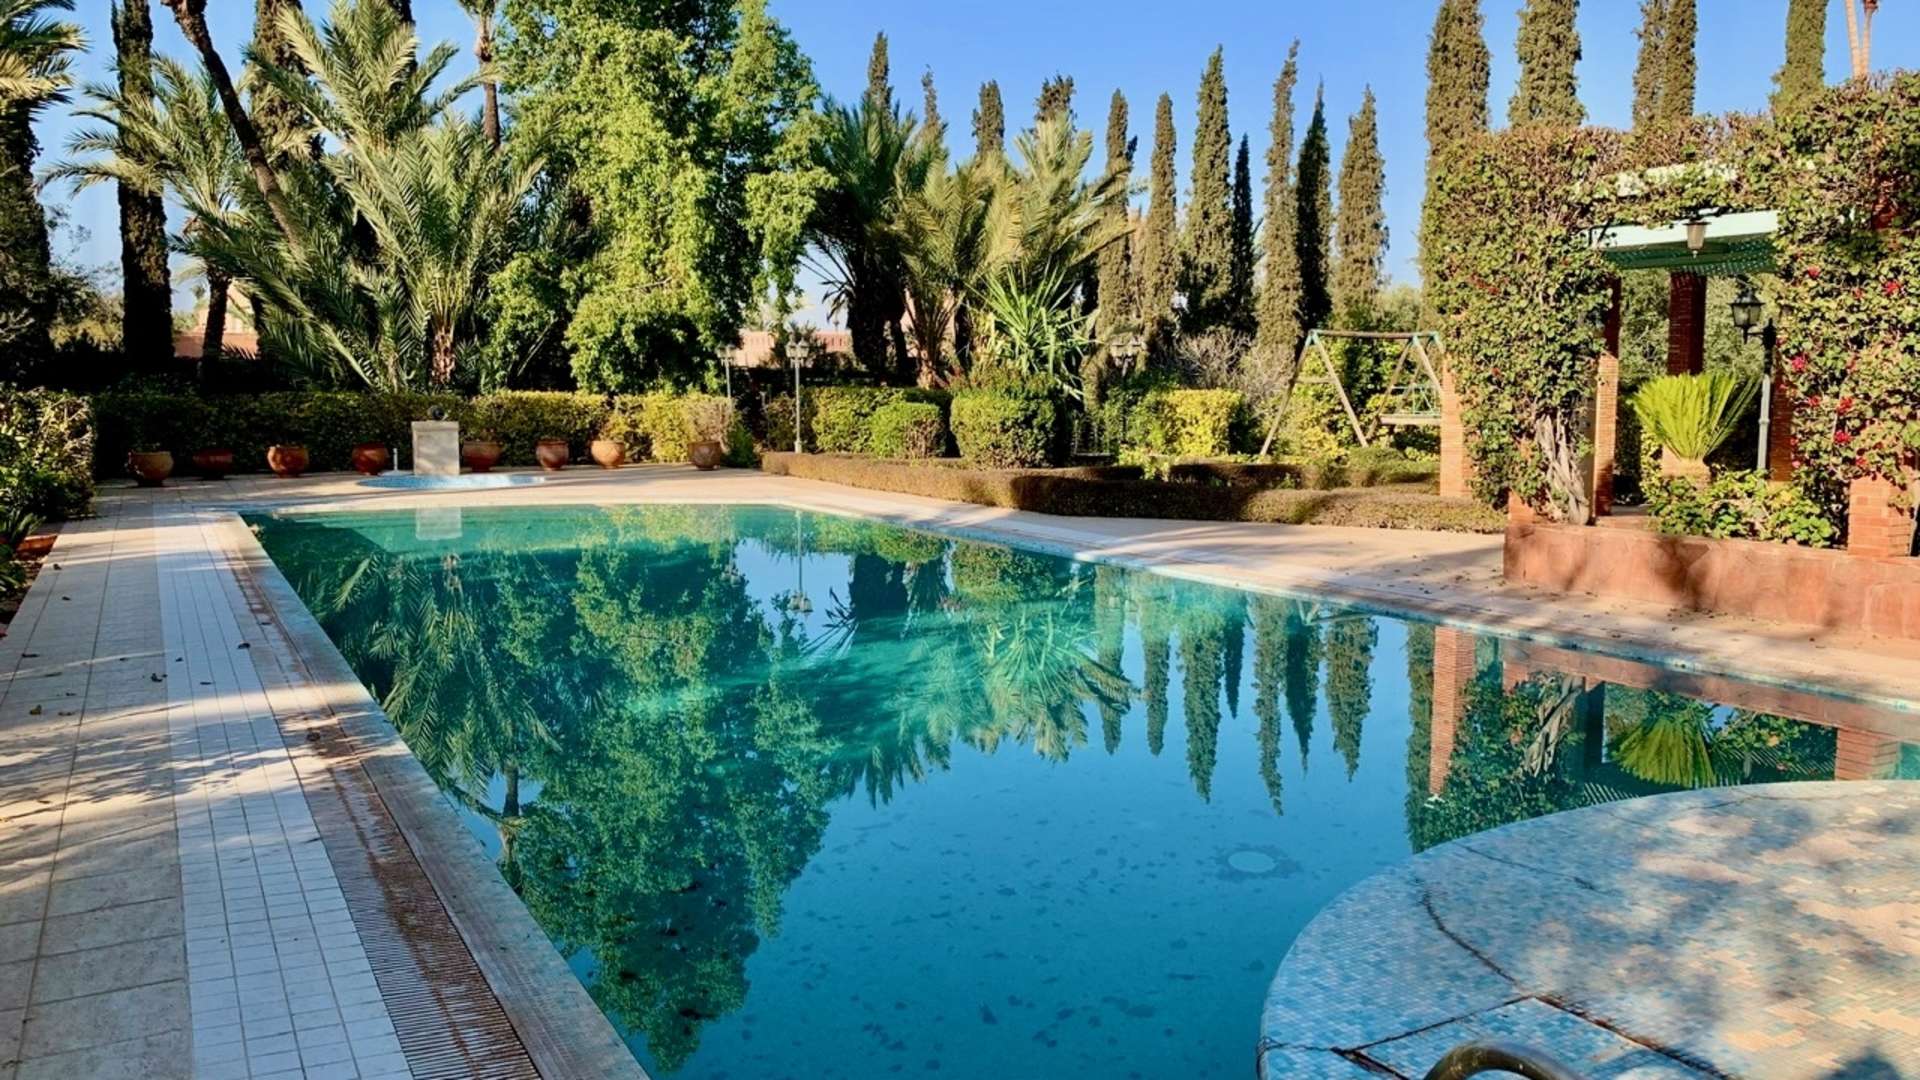 Vente,Villa,Bienvenue dans l'élégance intemporelle de cette propriété rare, nichée au cœur du quartier le plus luxueux de la Palmeraie de Marrakech,Marrakech,Palmeraie